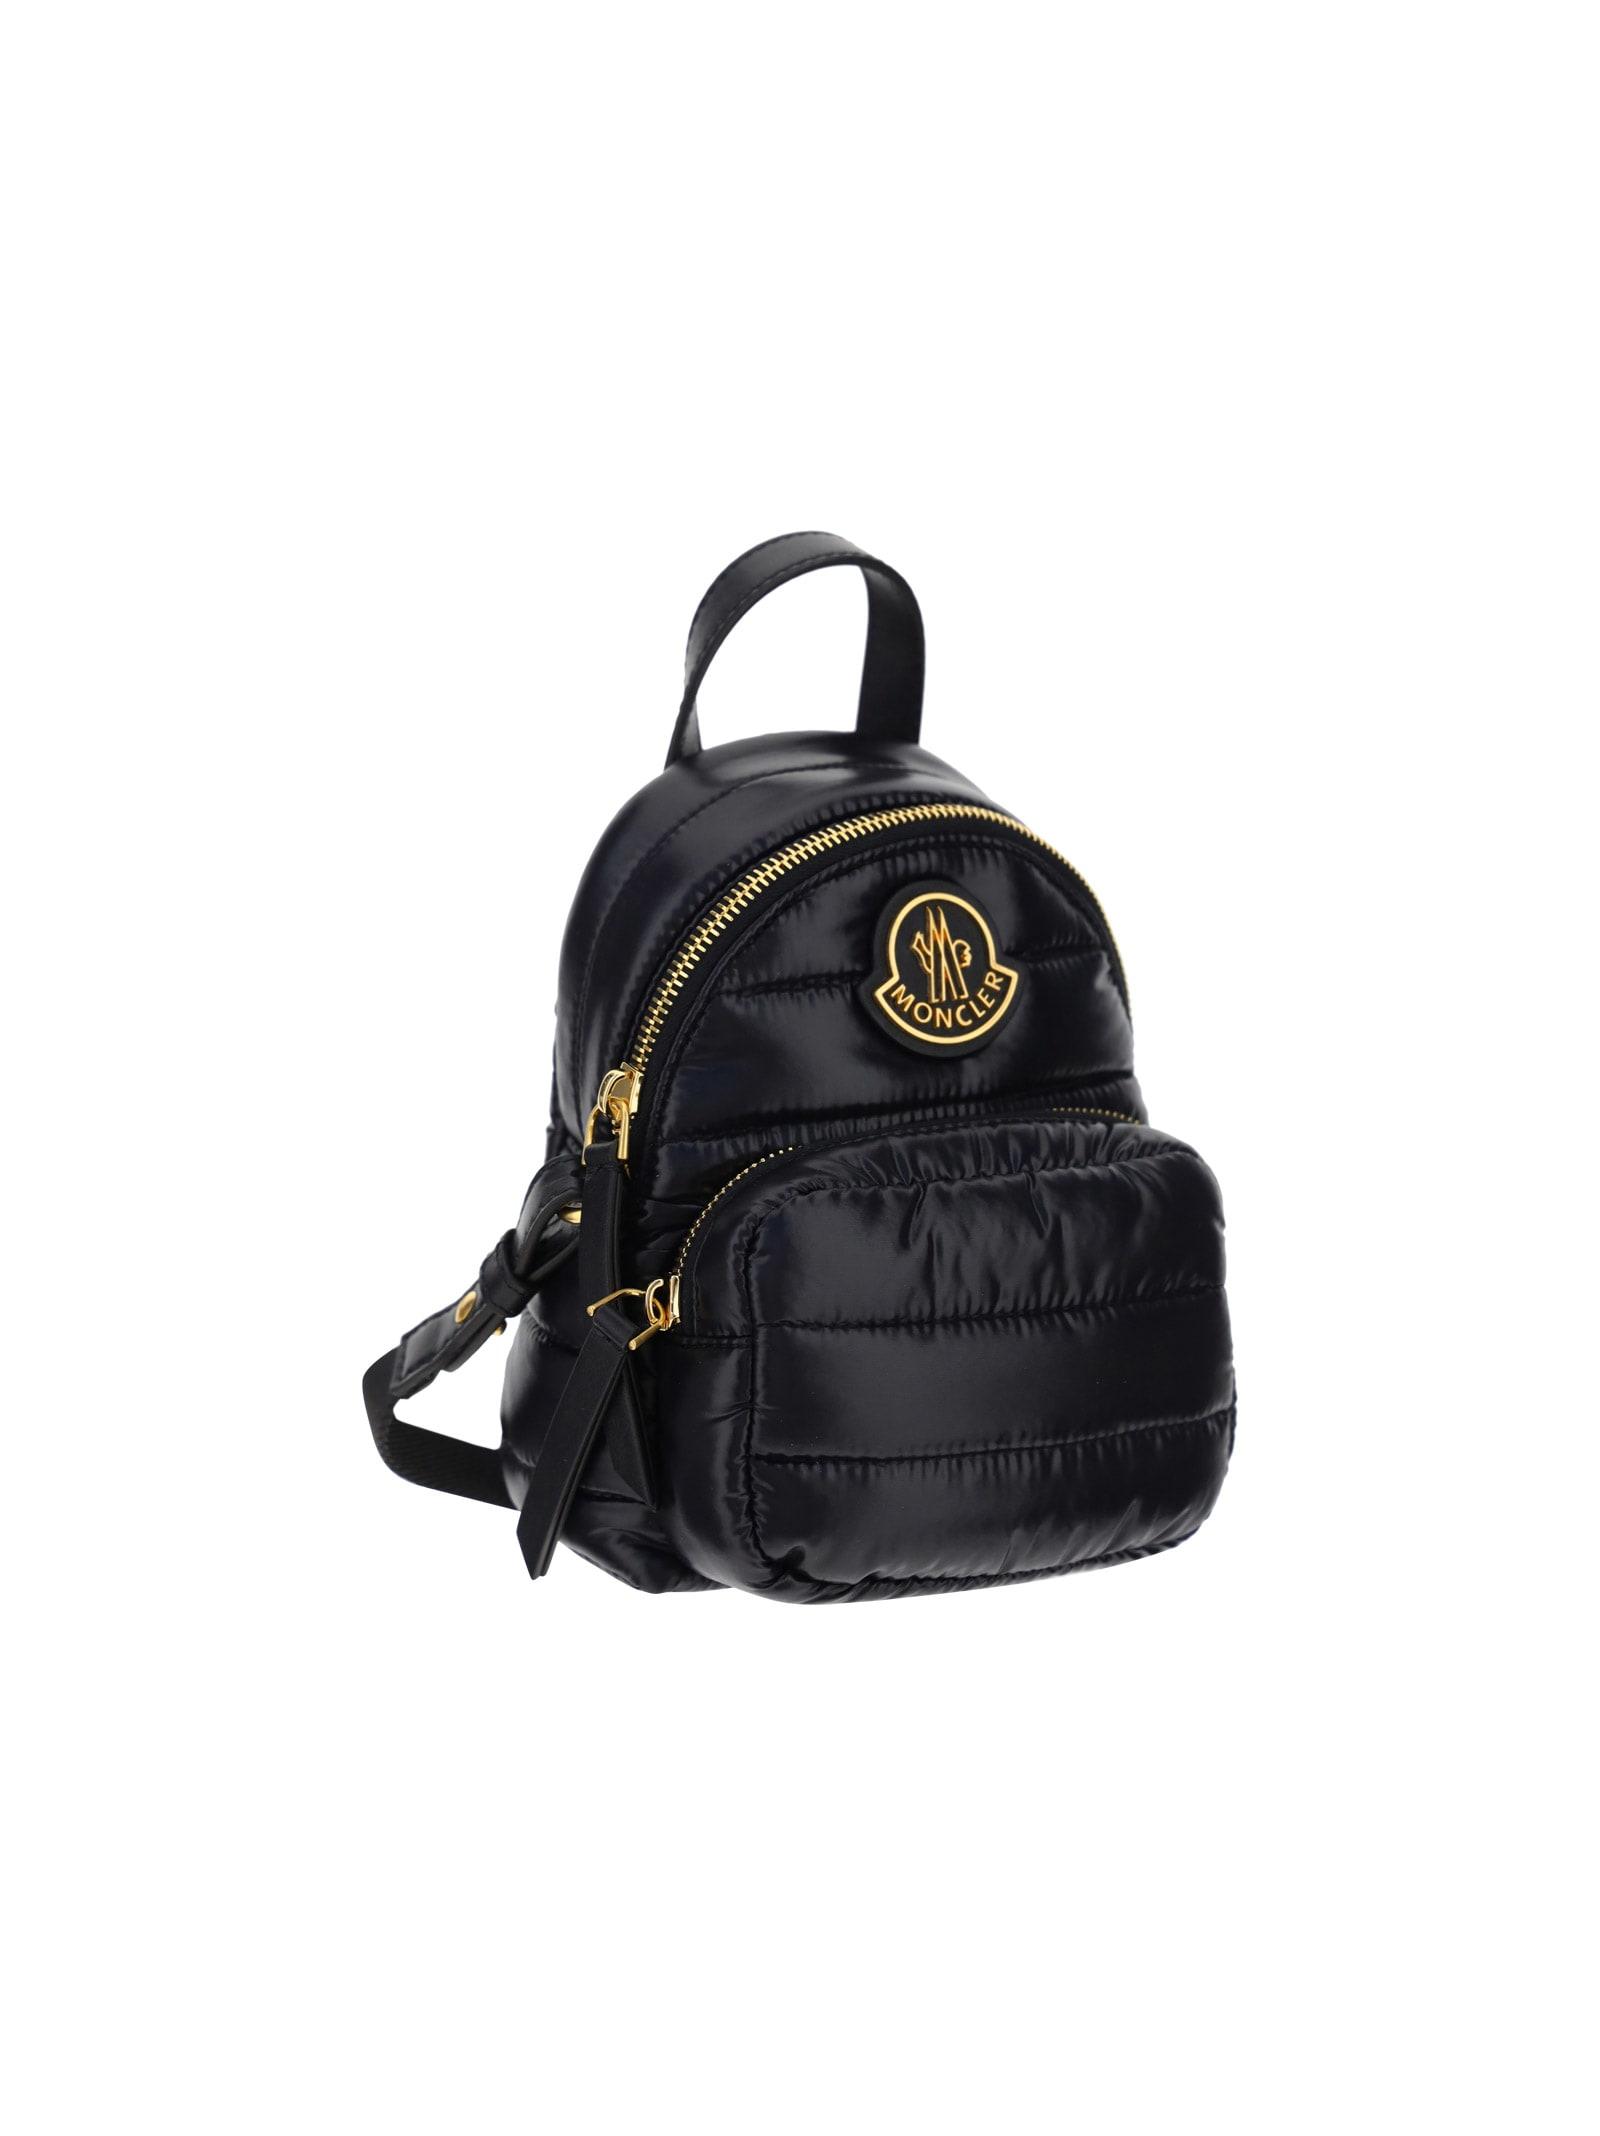 Moncler Kilia Backpack in Black | Lyst